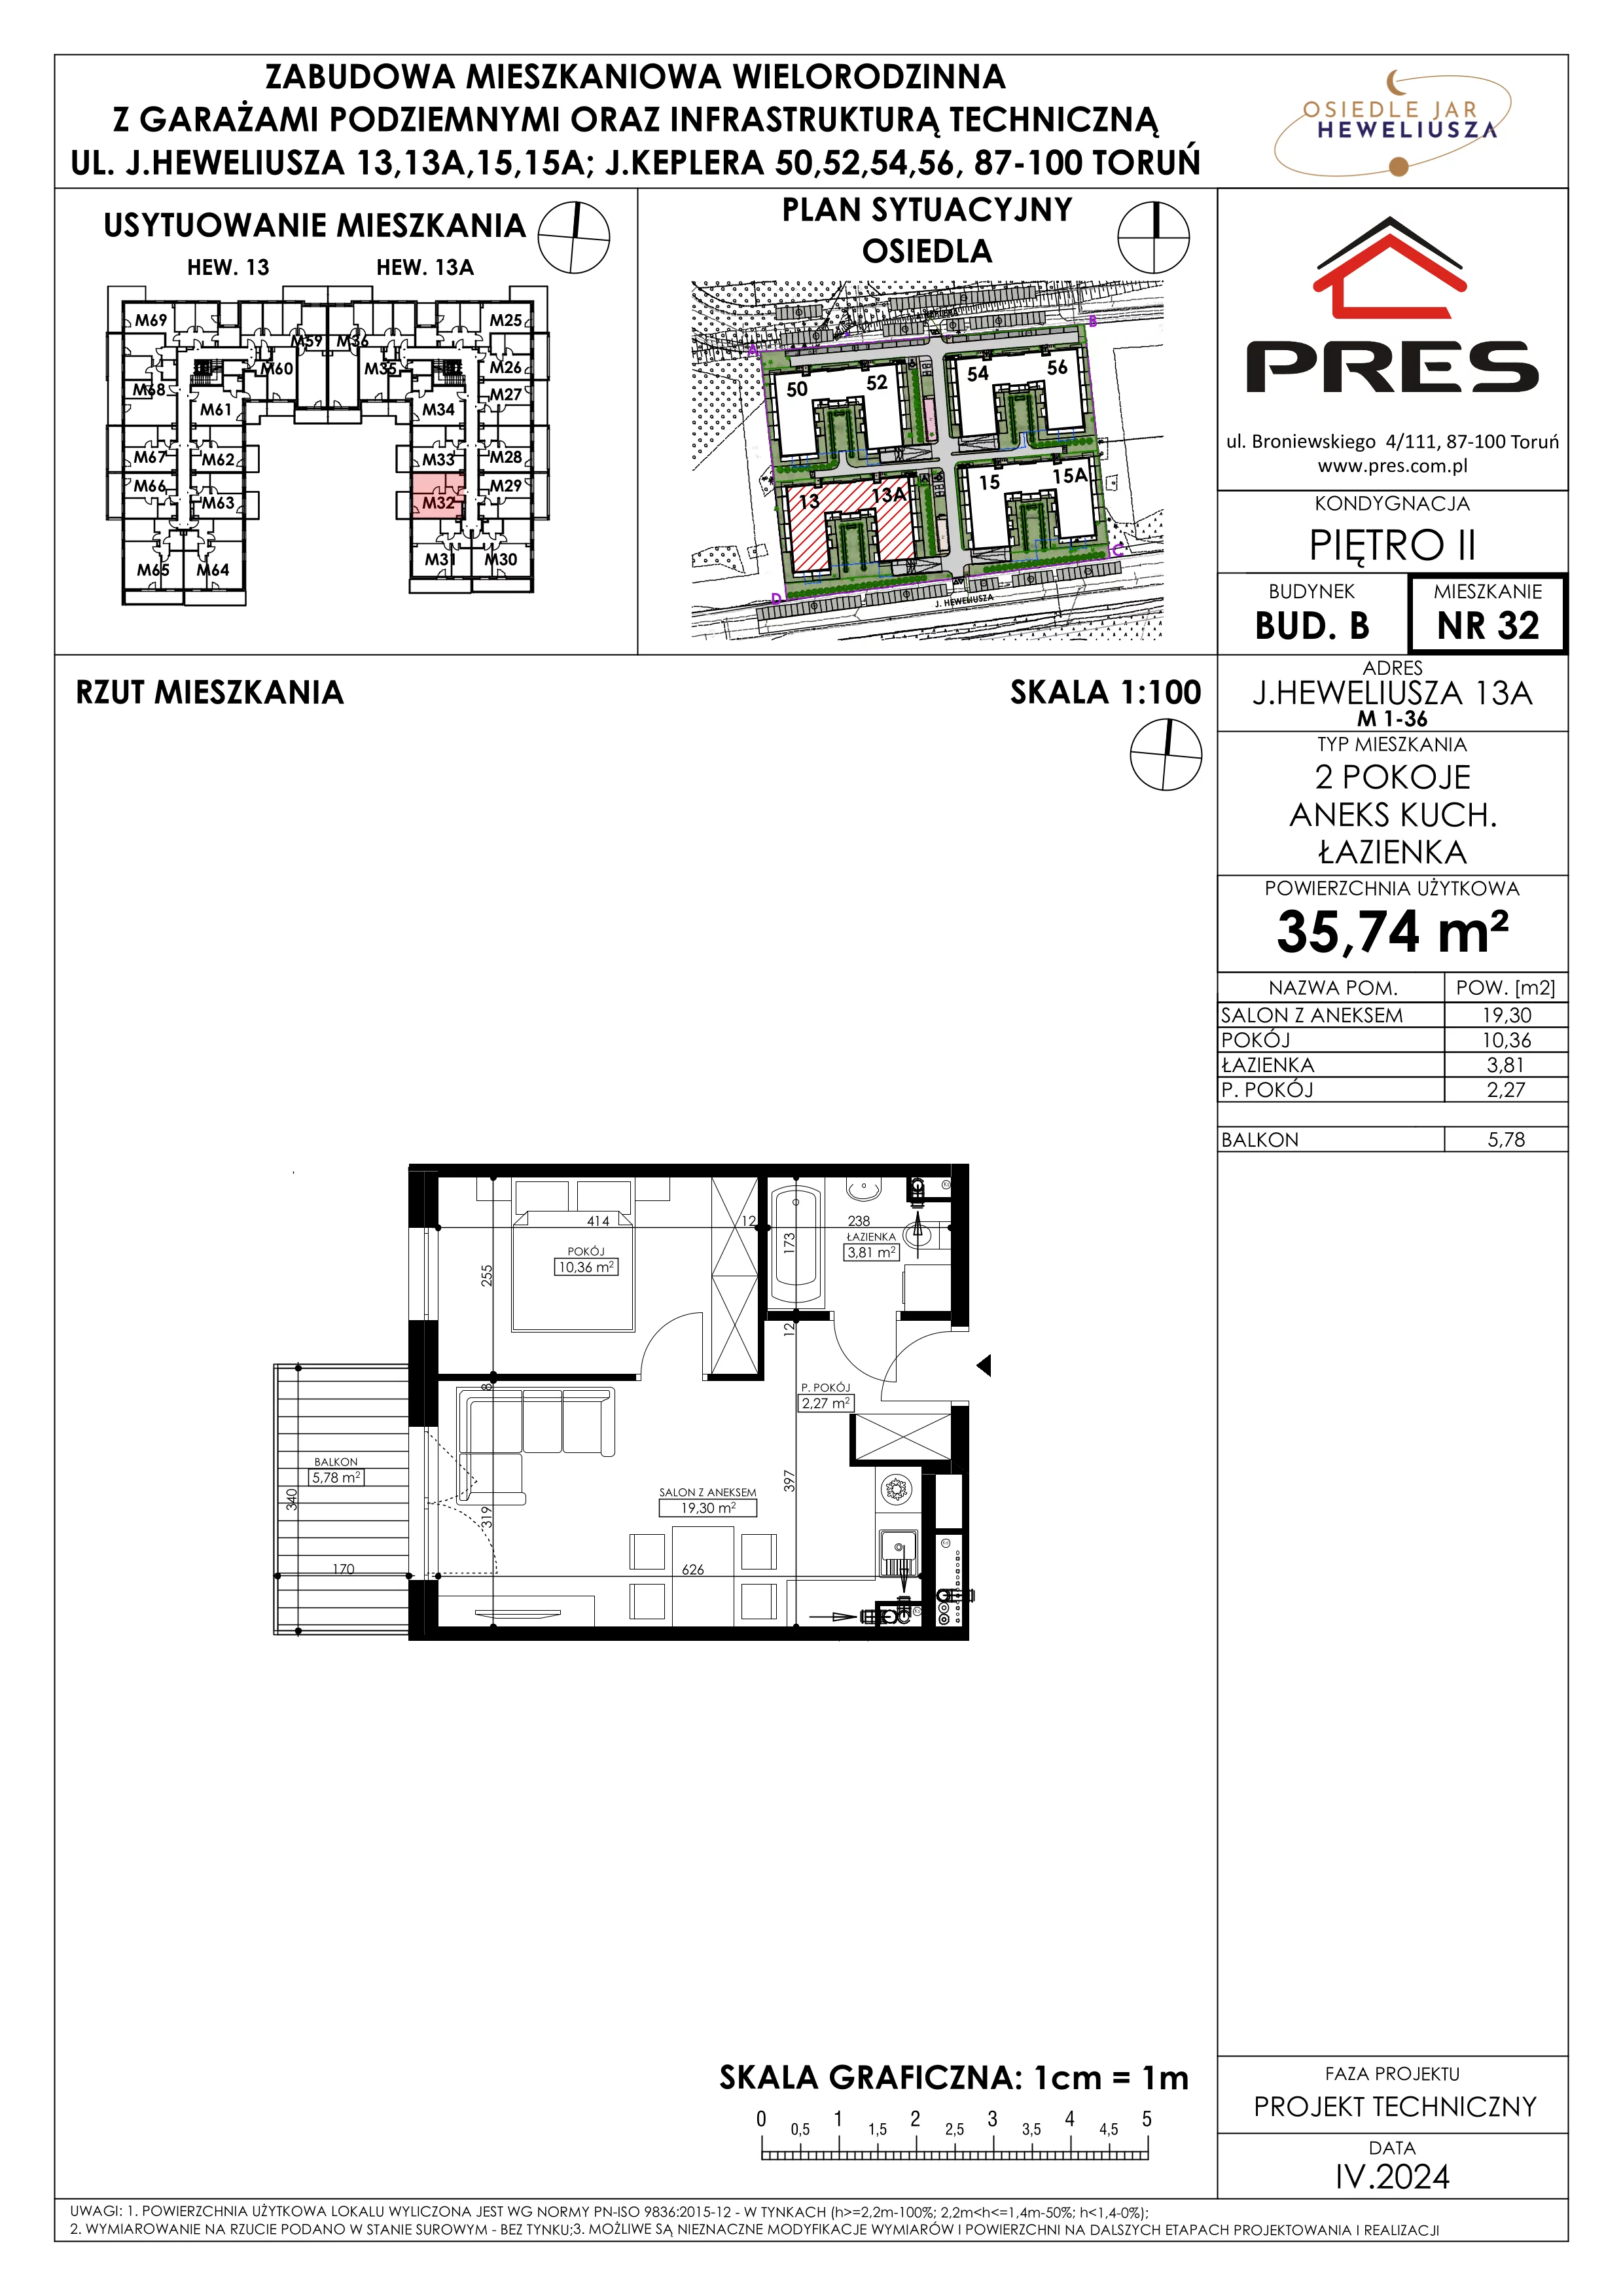 Mieszkanie 35,74 m², piętro 2, oferta nr 32, Osiedle JAR Heweliusza - Etap II, Toruń, Wrzosy, JAR, ul. Heweliusza 13-15A